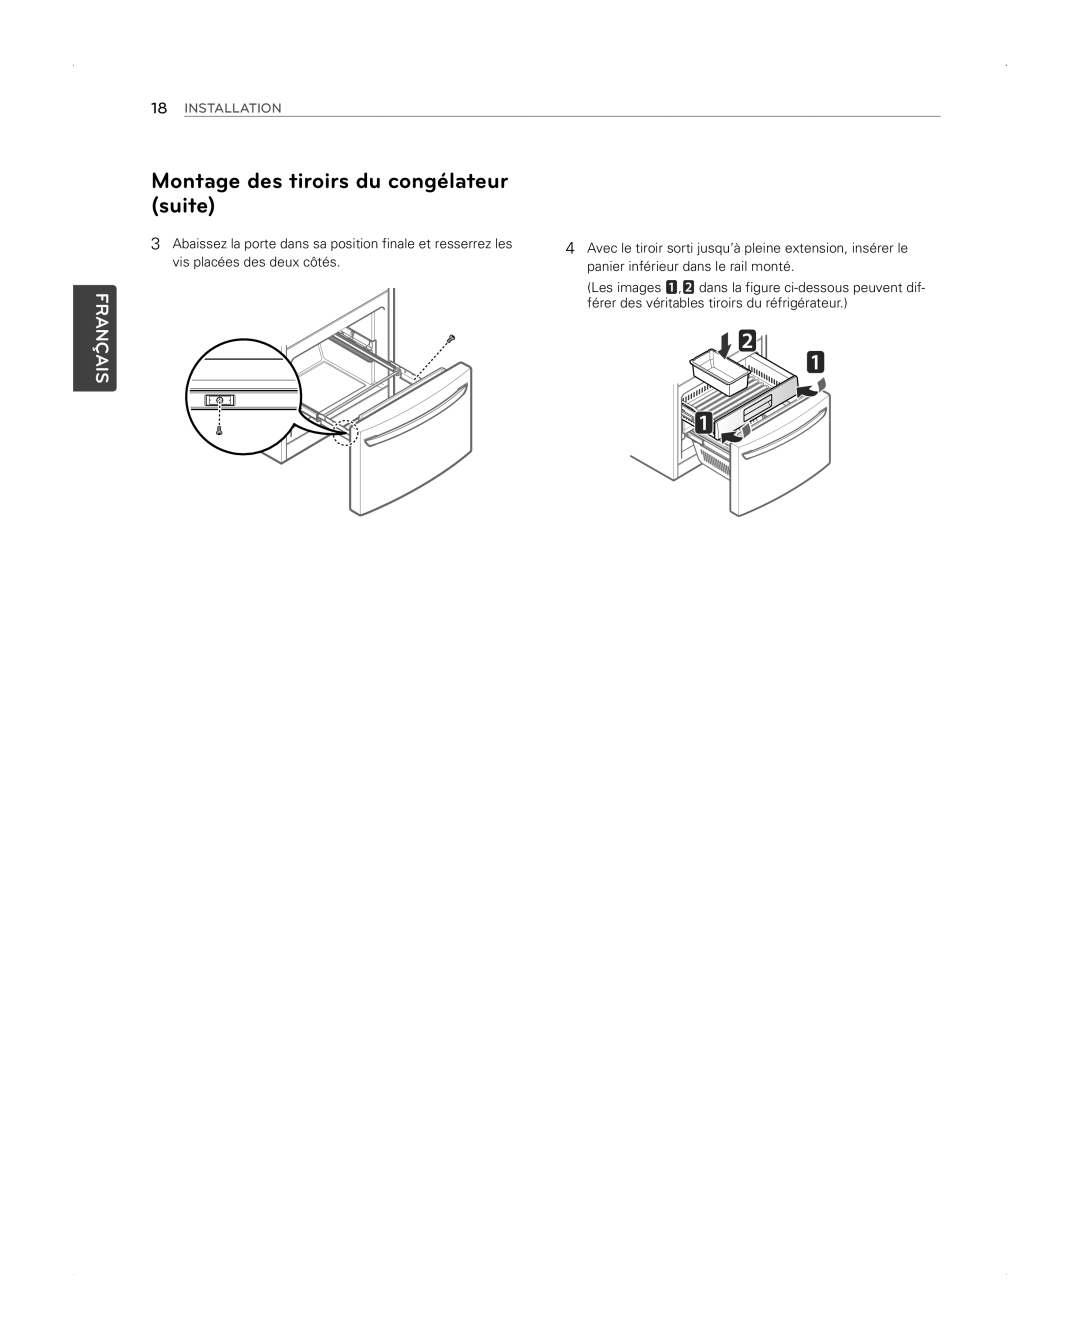 LG Electronics LFX31945ST owner manual Montage des tiroirs du congélateur suite, Français, Installation 